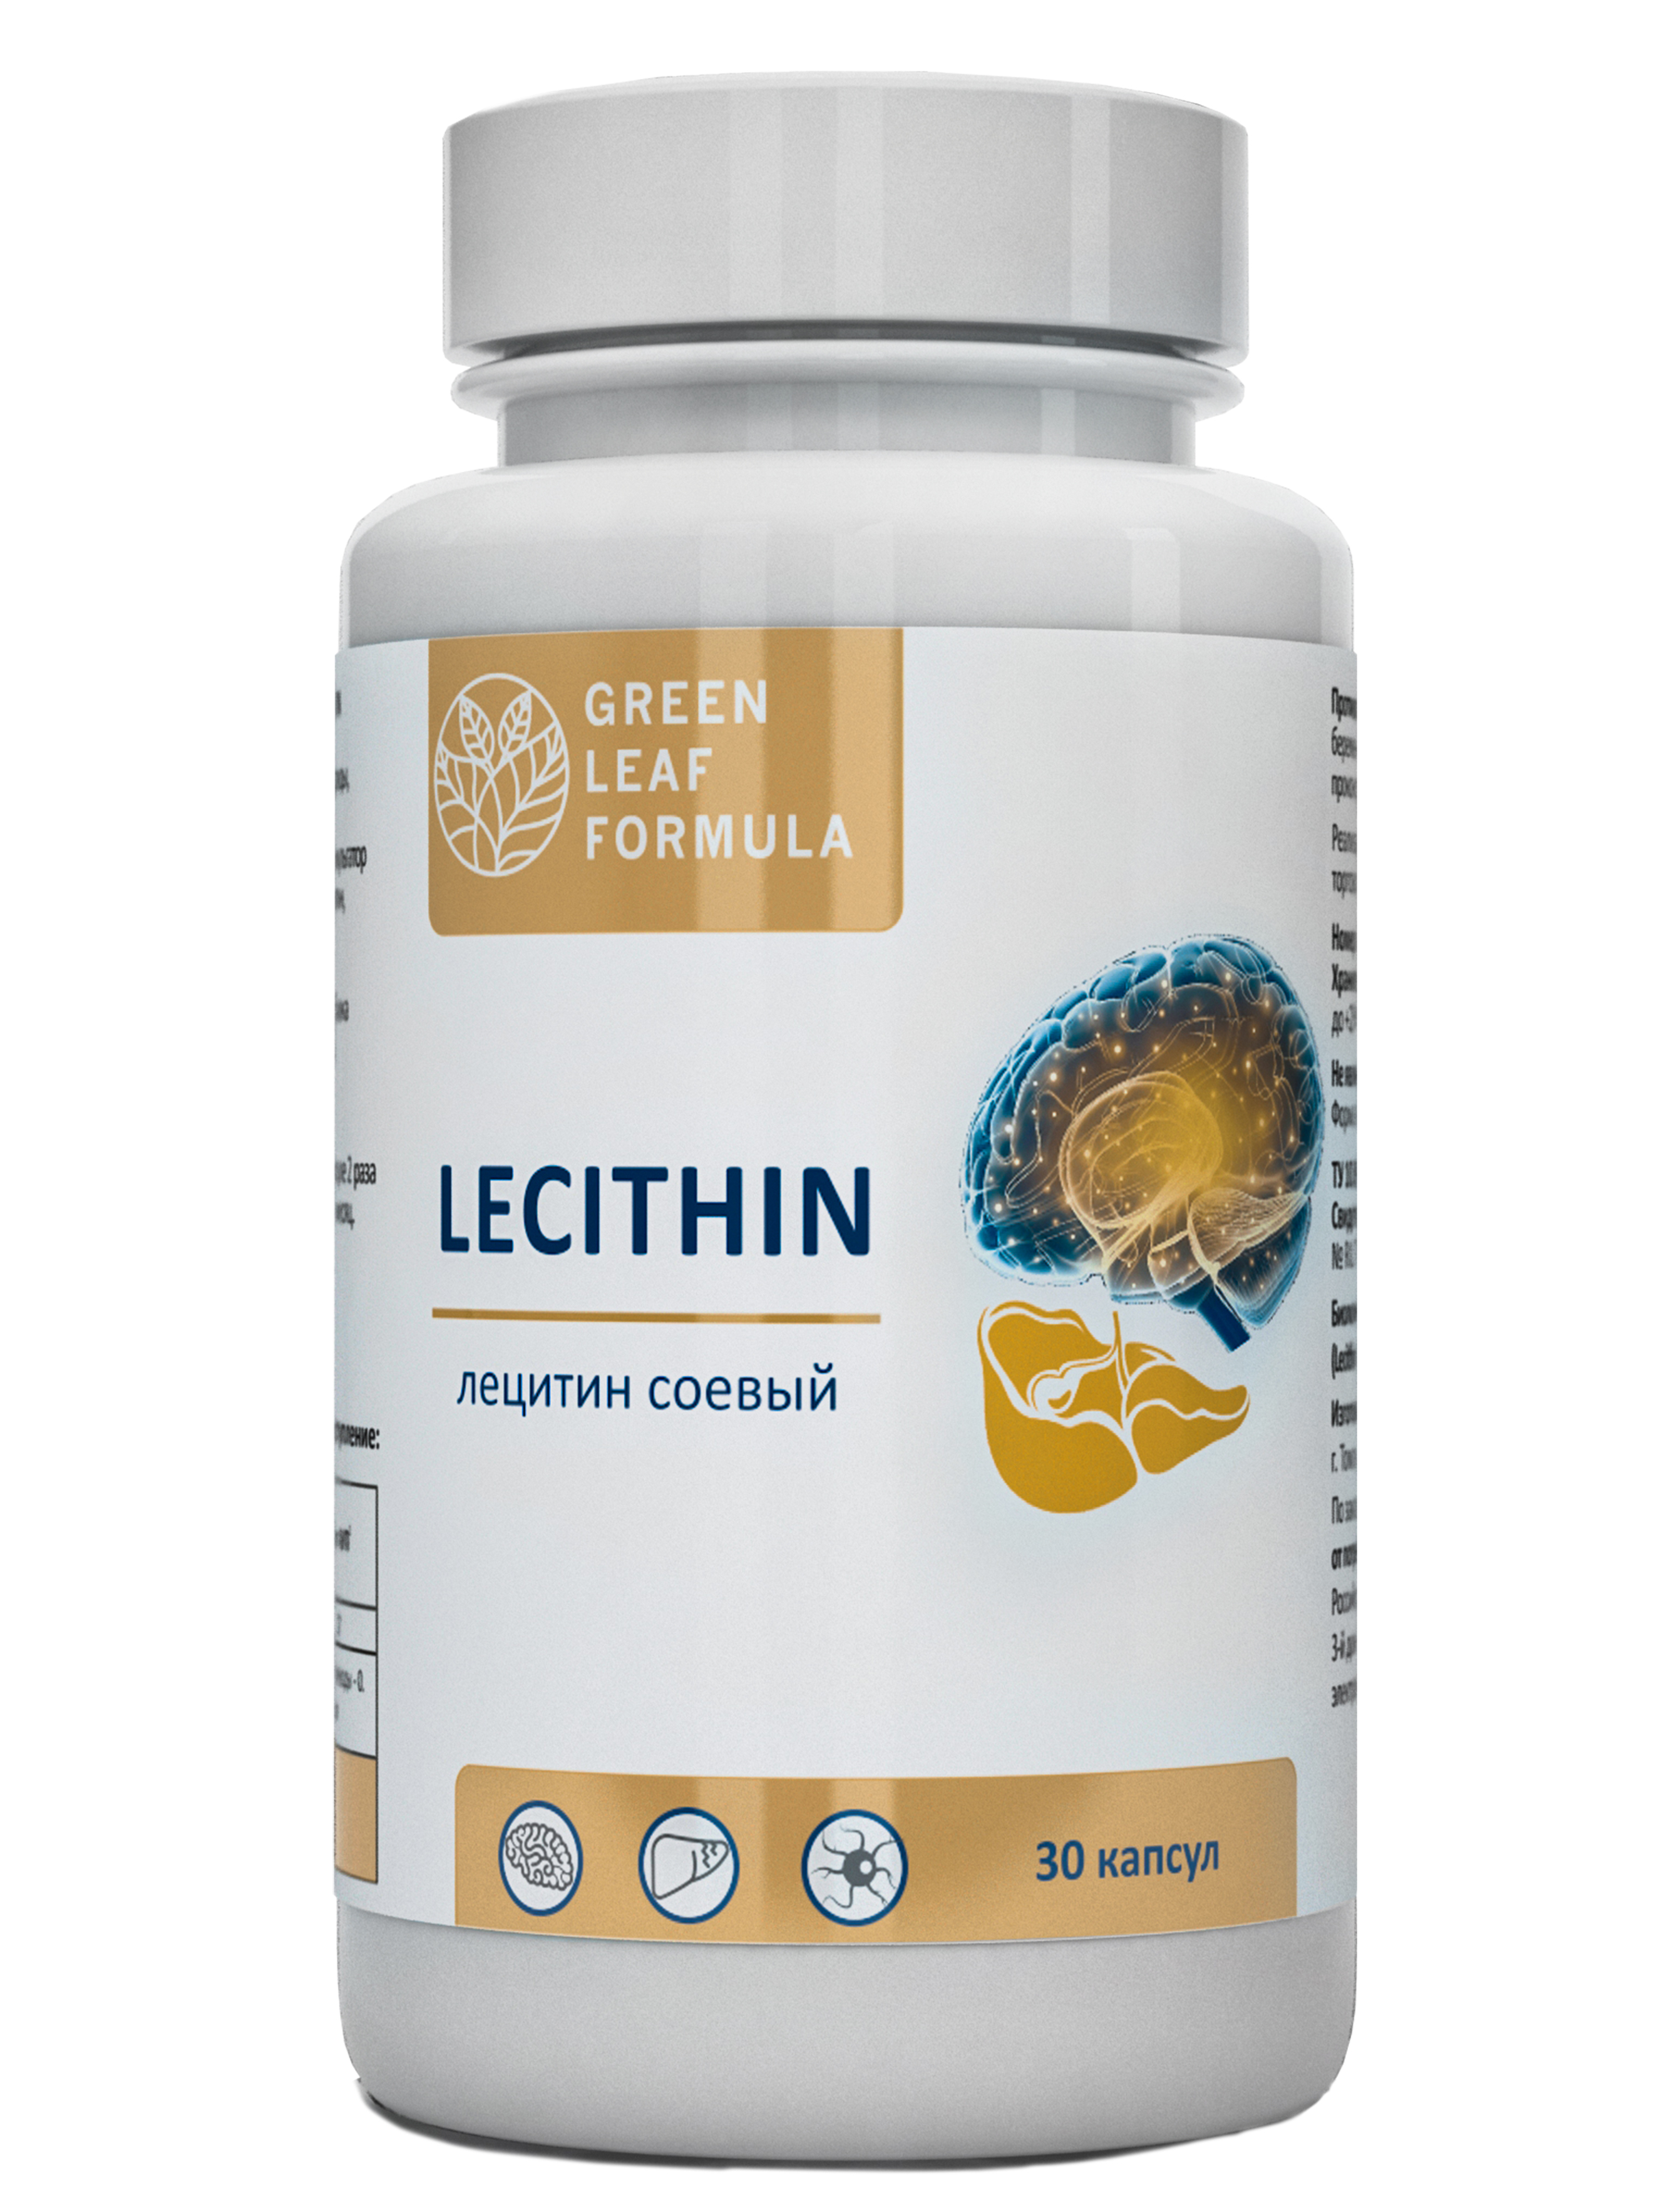 Купить Лецитин соевый фосфолипиды Green Leaf Formula витамины для мозга 1620 мг капсулы 30 шт.